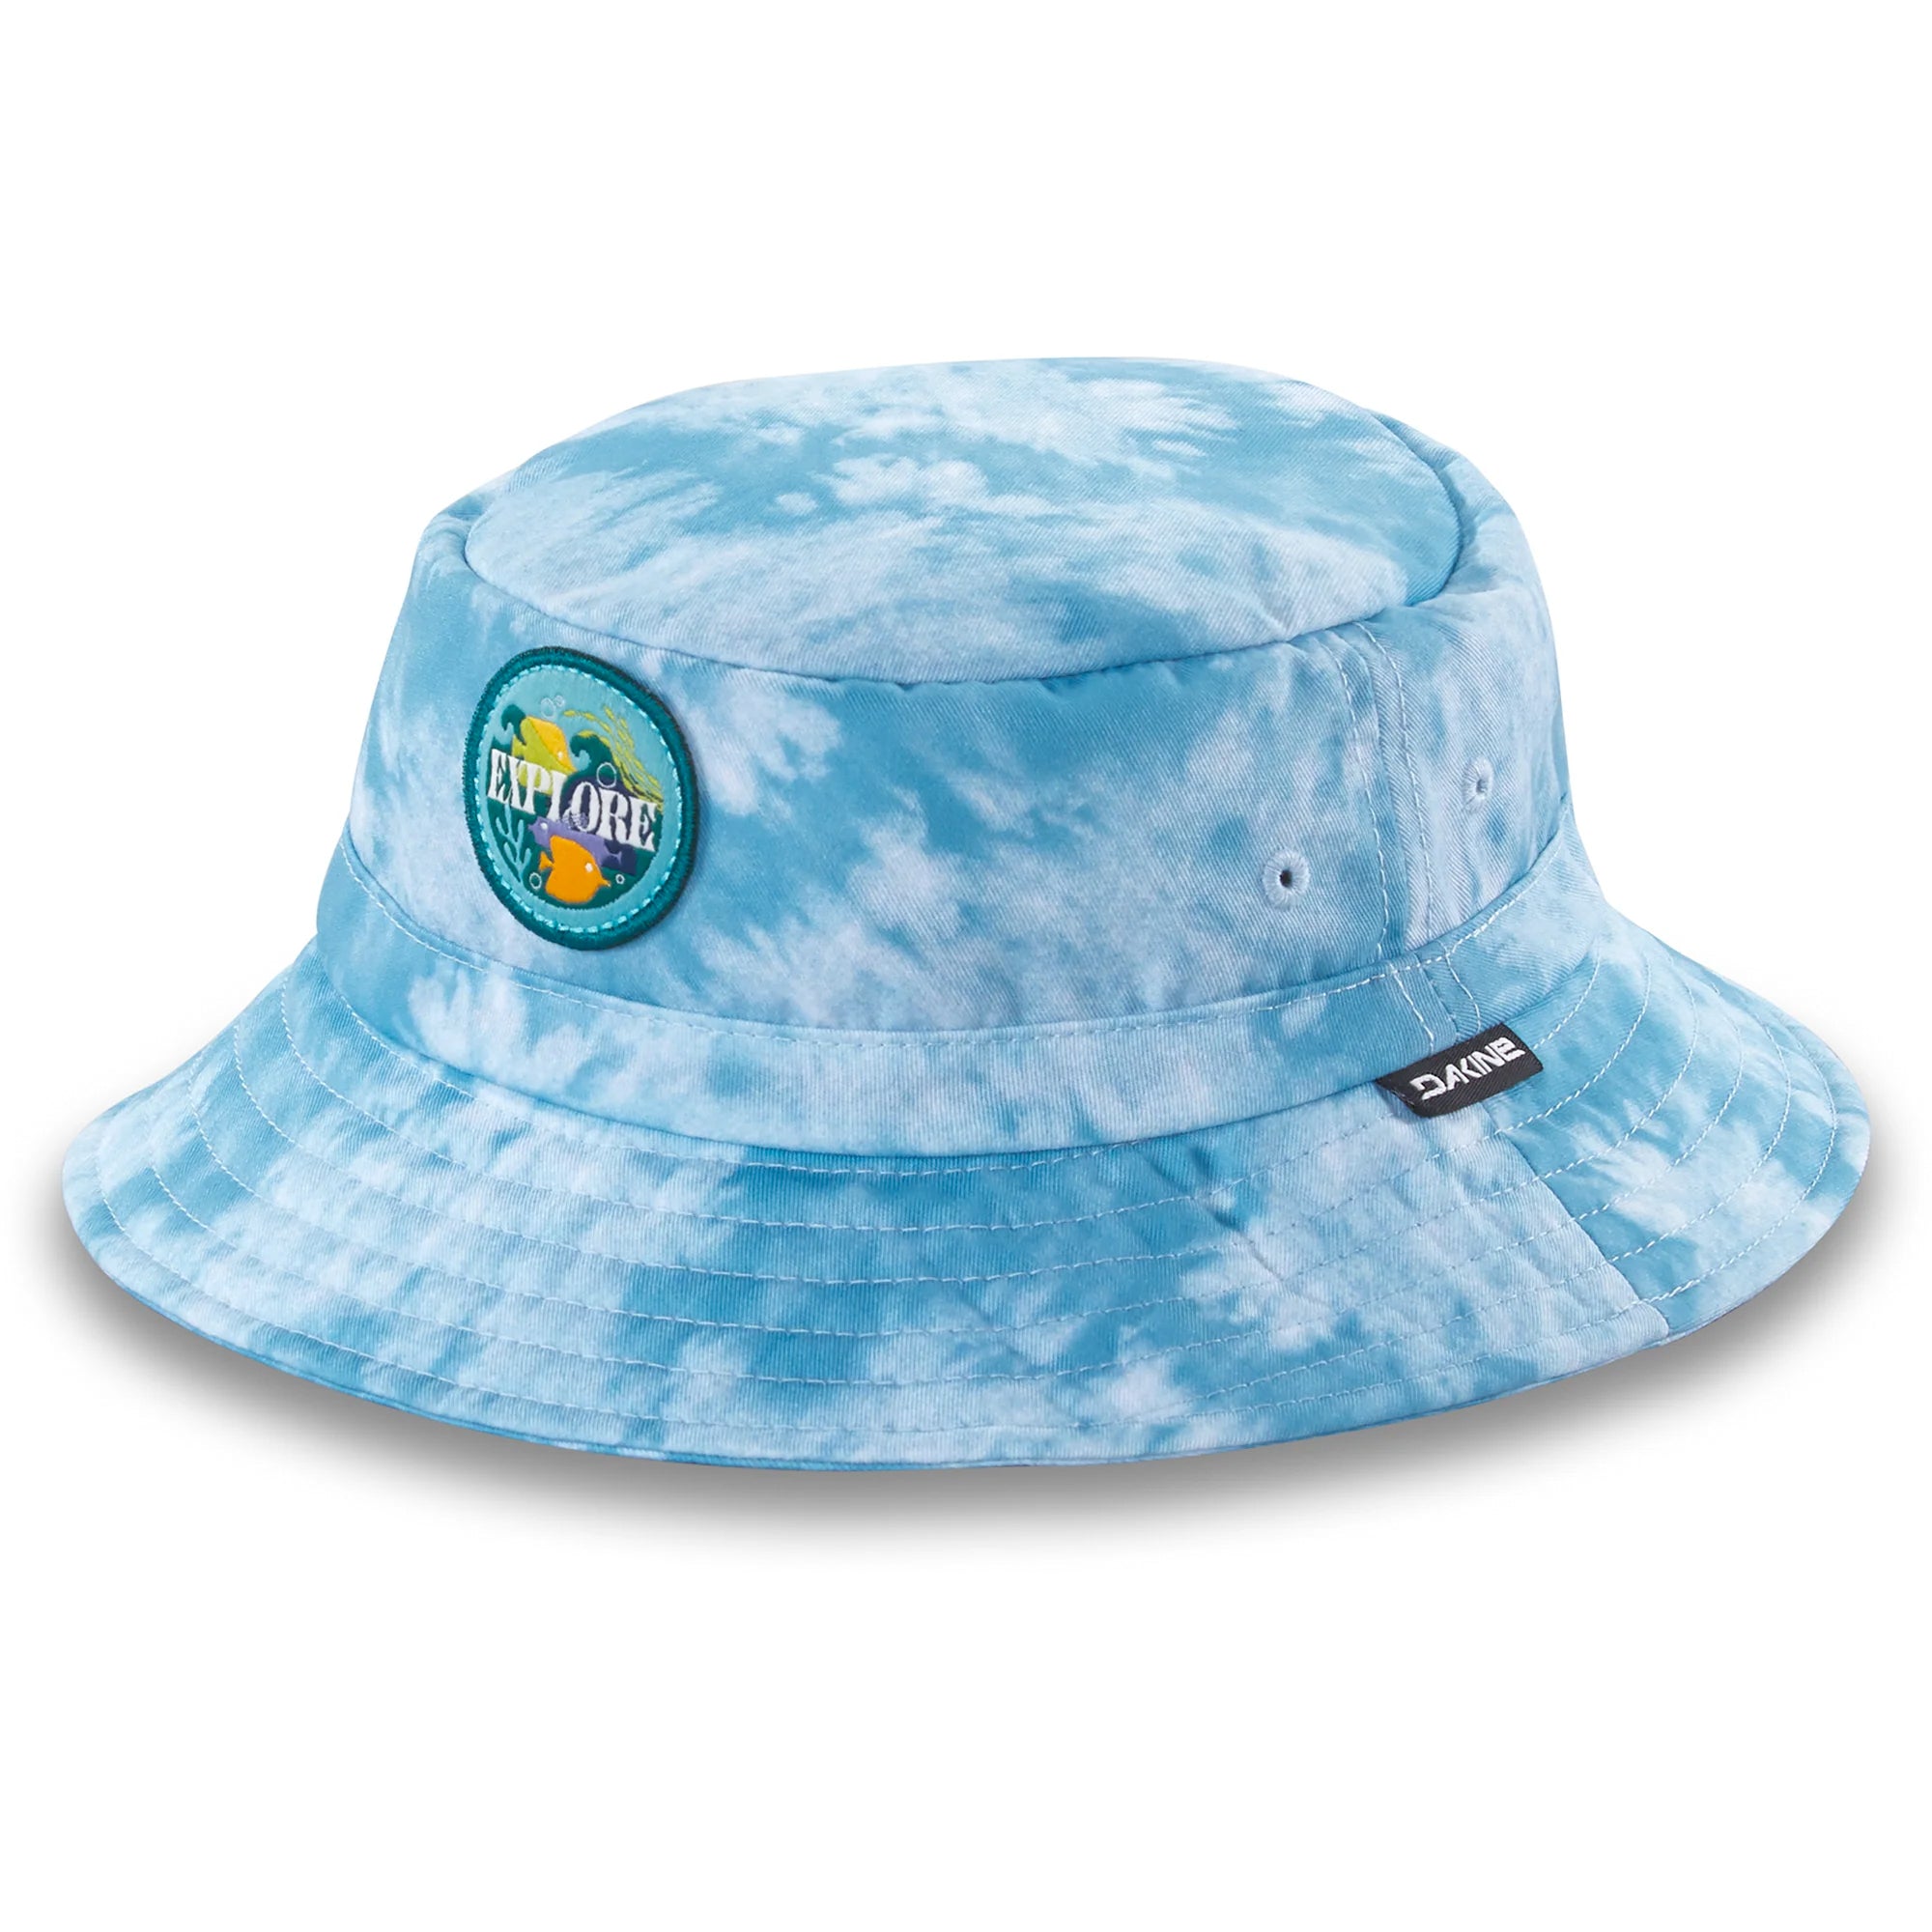 Dakine Beach Bum Youth Bucket Hat